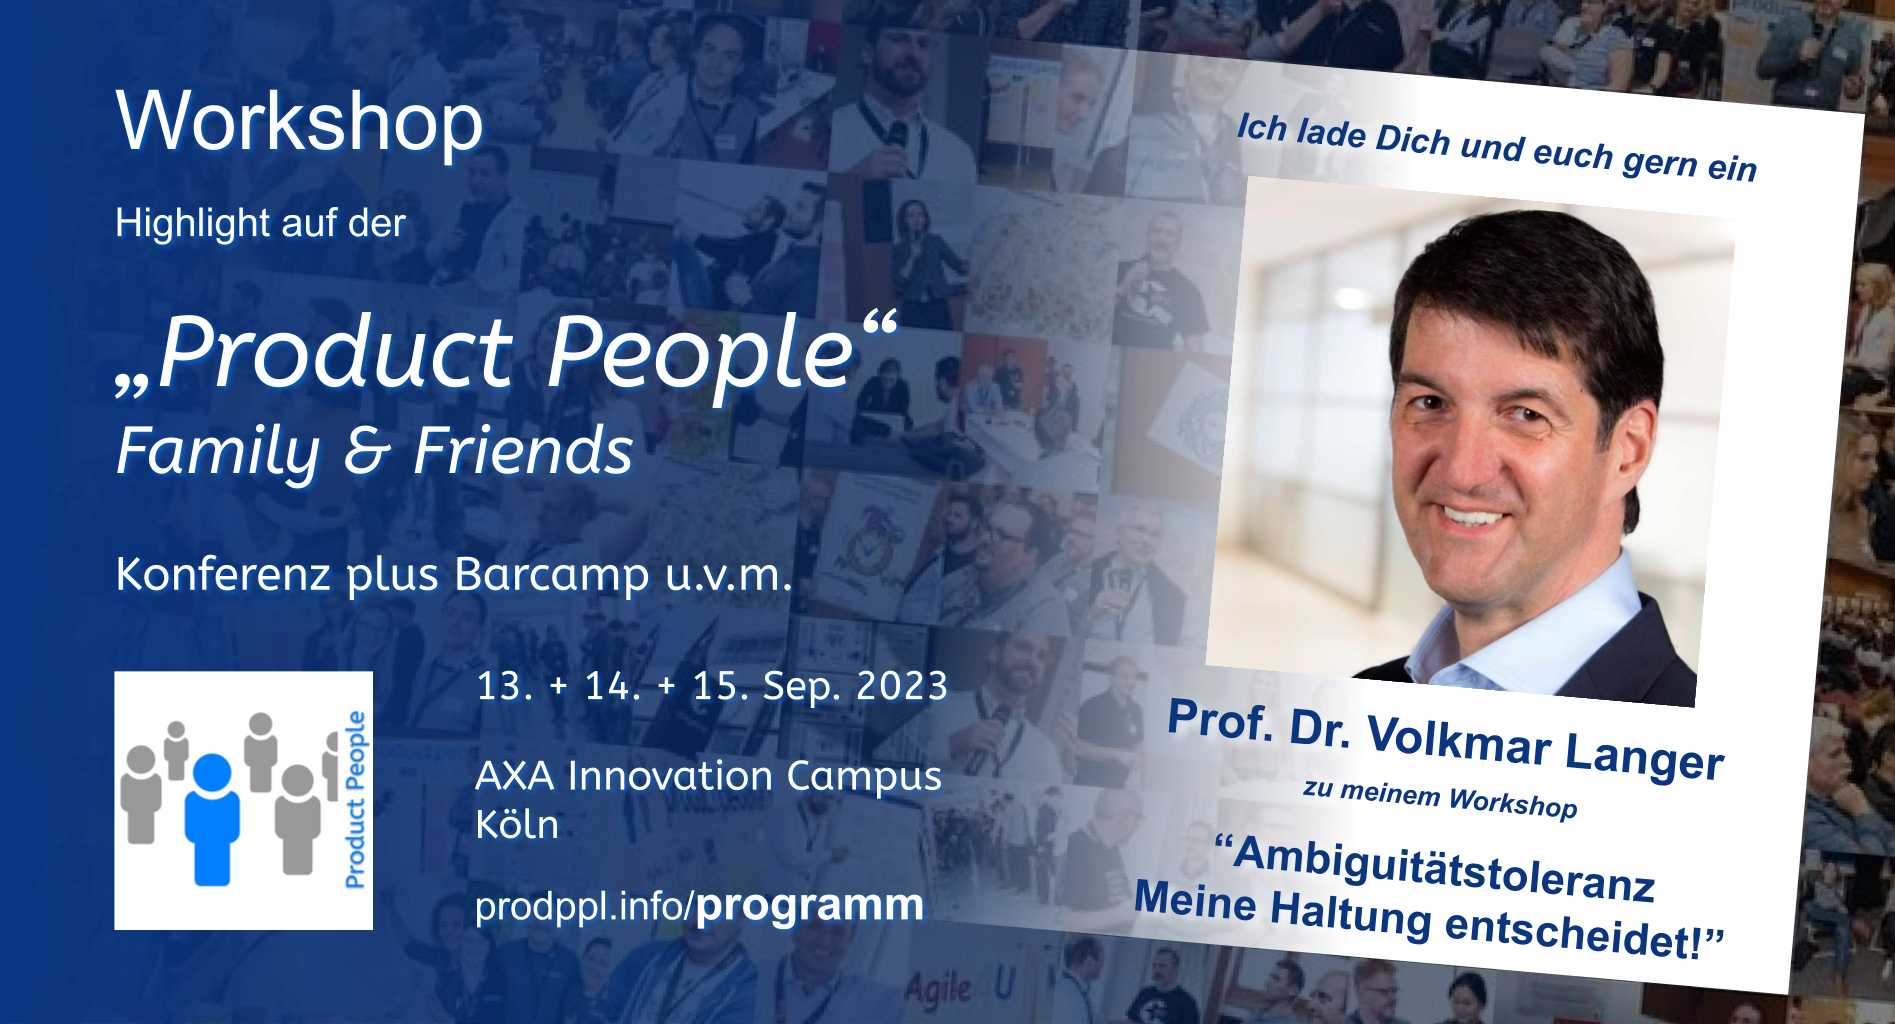 "Ambiguitätstoleranz - Meine Haltung entscheidet!" - XL-Workshop von und mit Prof. Dr. Volkmar Langer - auf der 'Product People - Family & Friends' - Konferenz plus Barcamp - Köln 2023